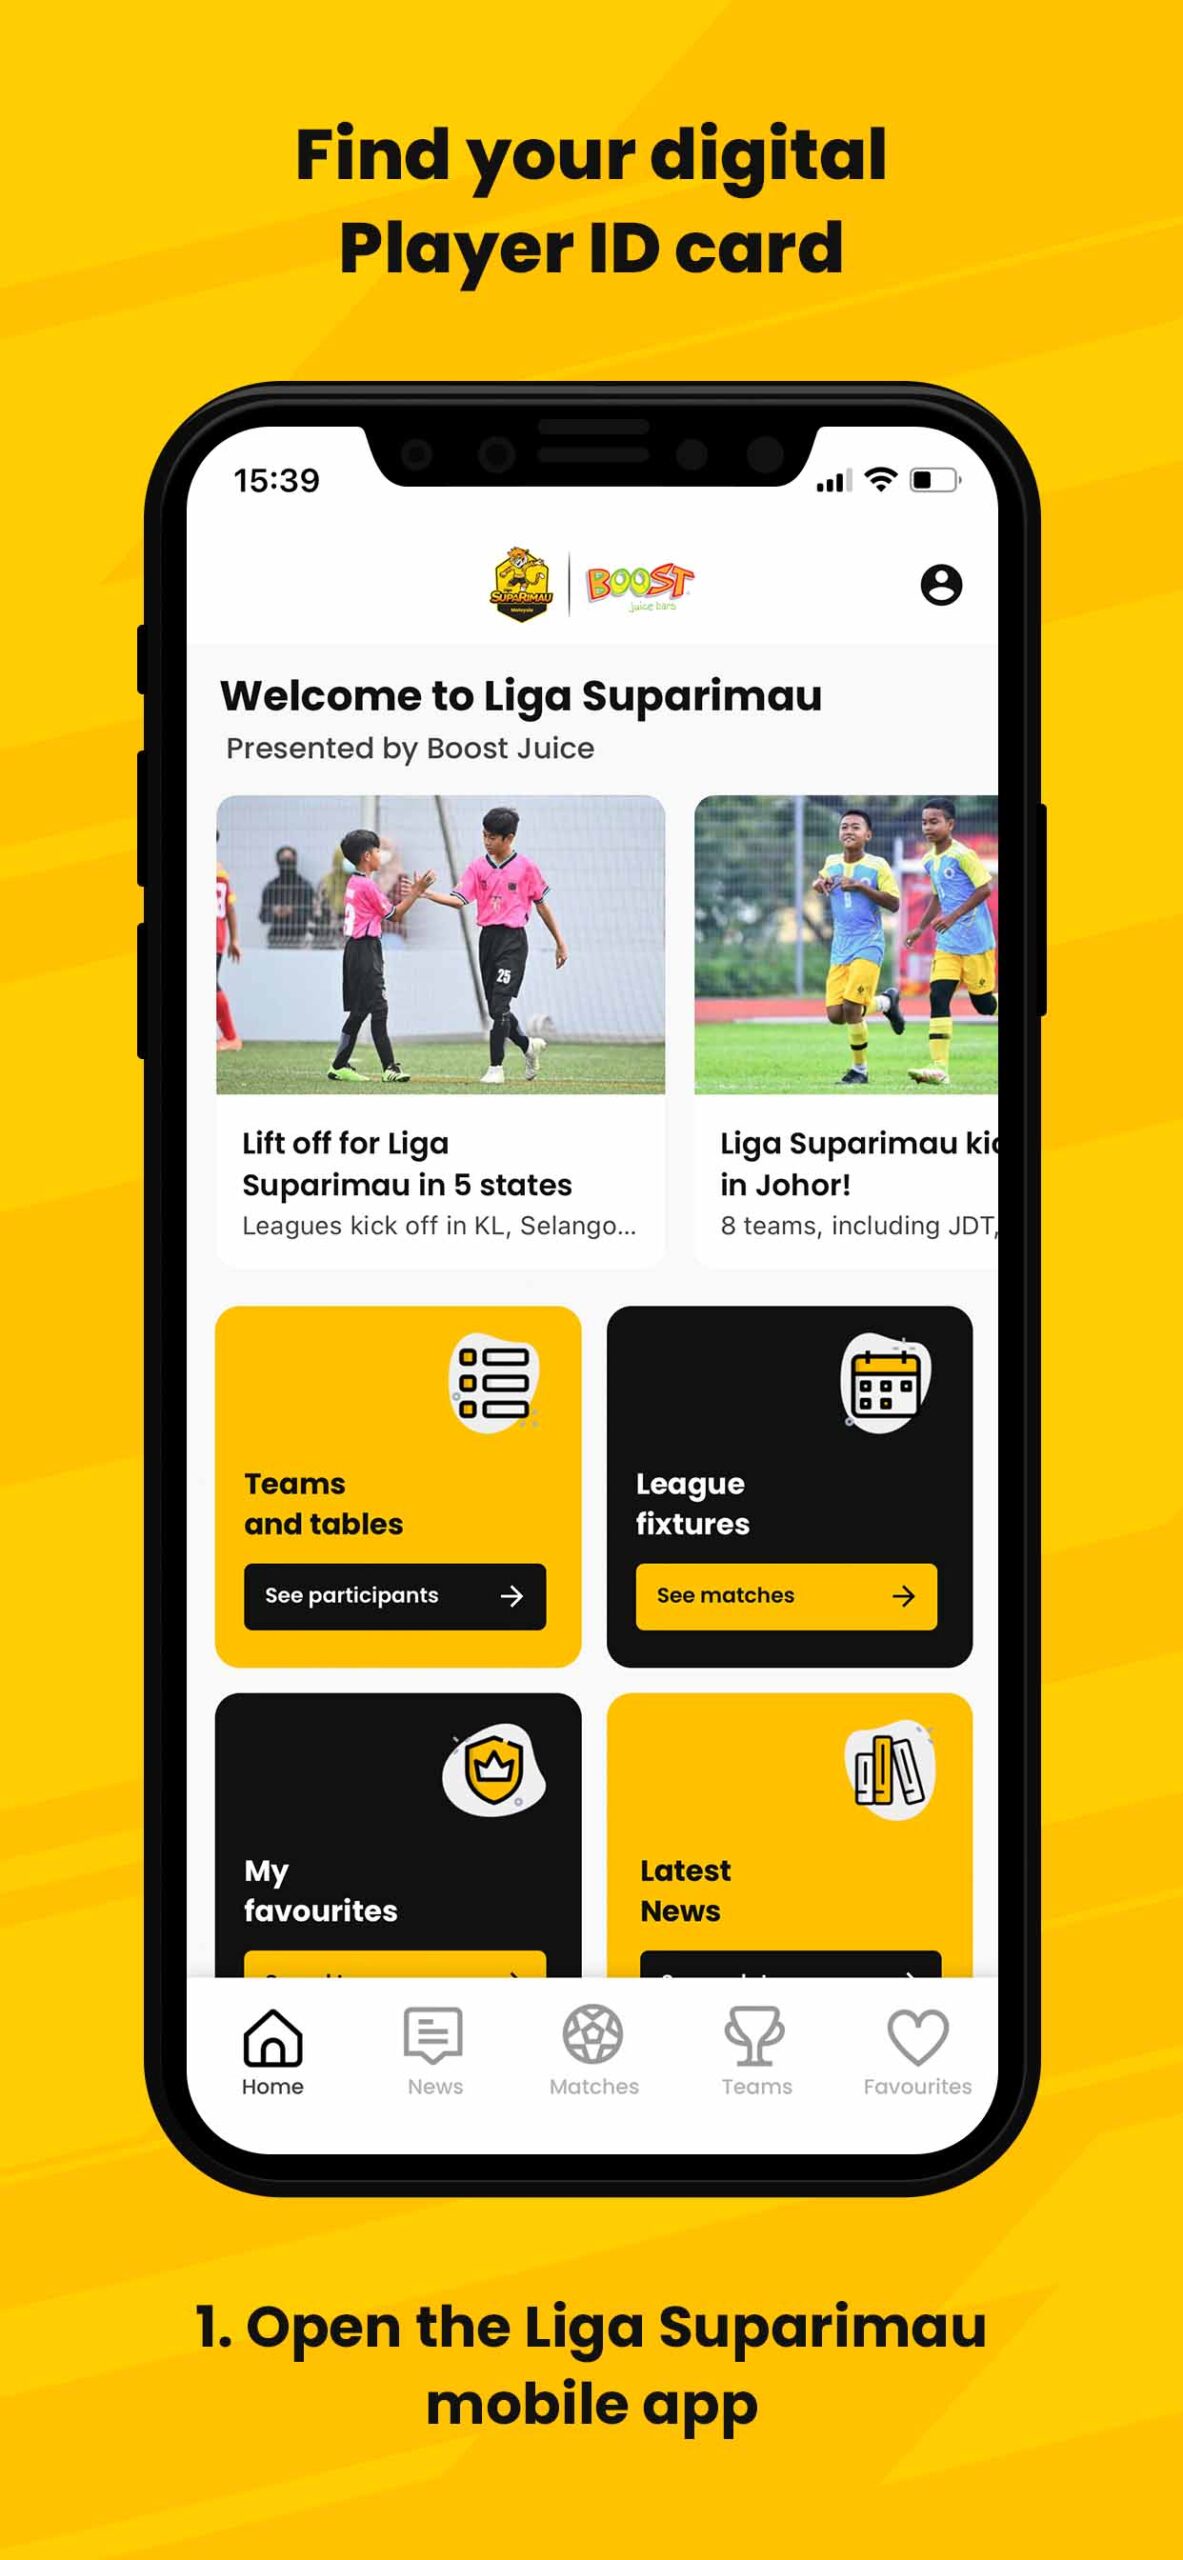 1. Open your Liga Suparimau mobile app